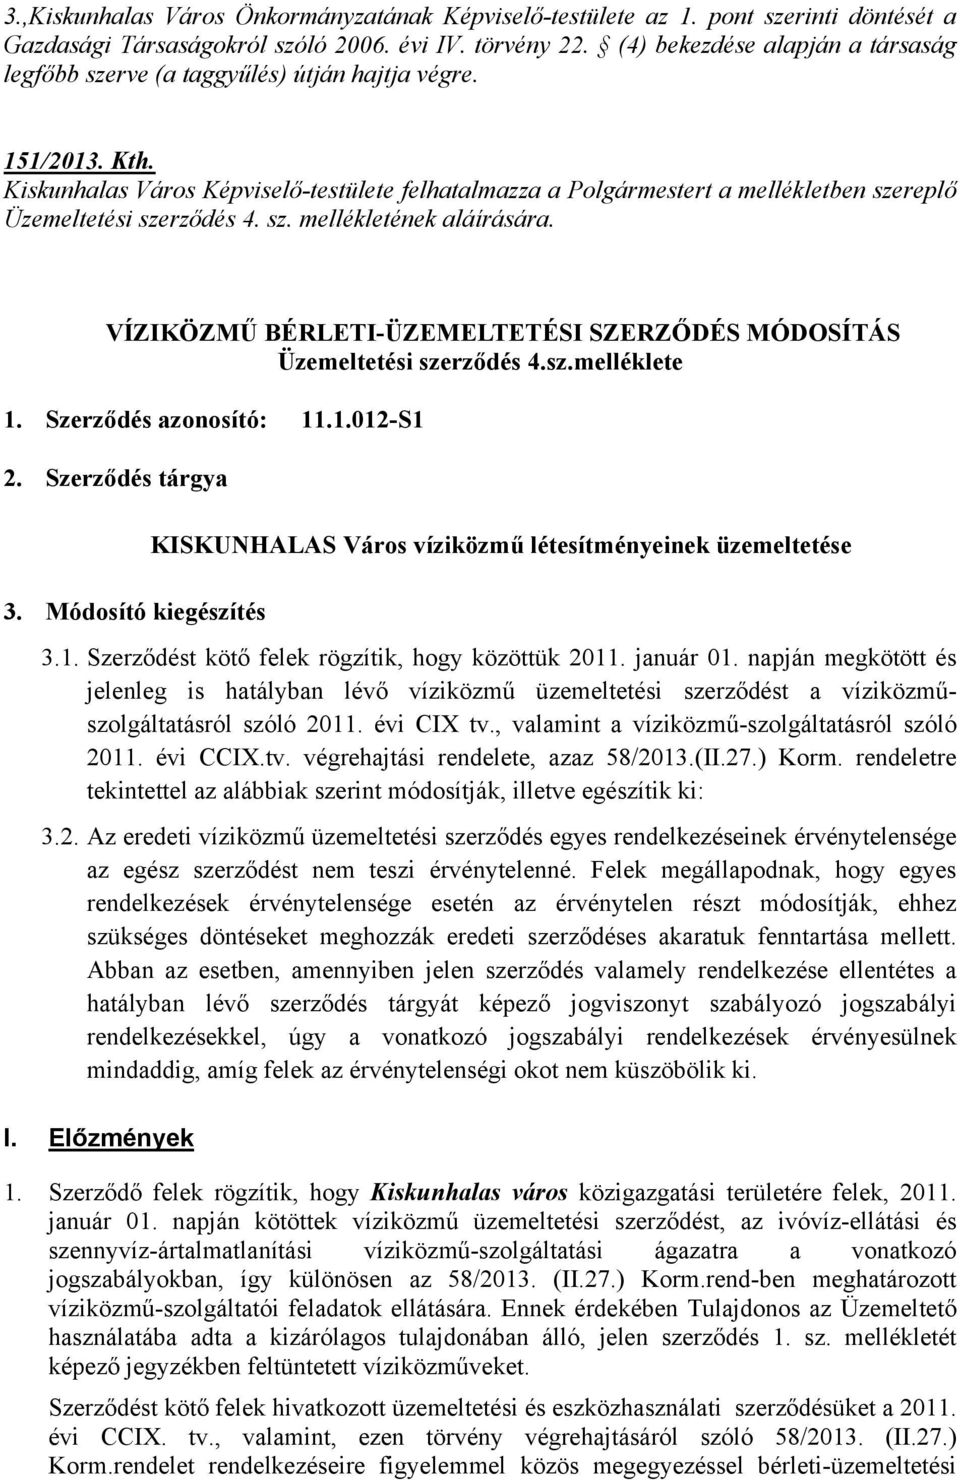 Kiskunhalas Város Képviselő-testülete felhatalmazza a Polgármestert a mellékletben szereplő Üzemeltetési szerződés 4. sz. mellékletének aláírására.